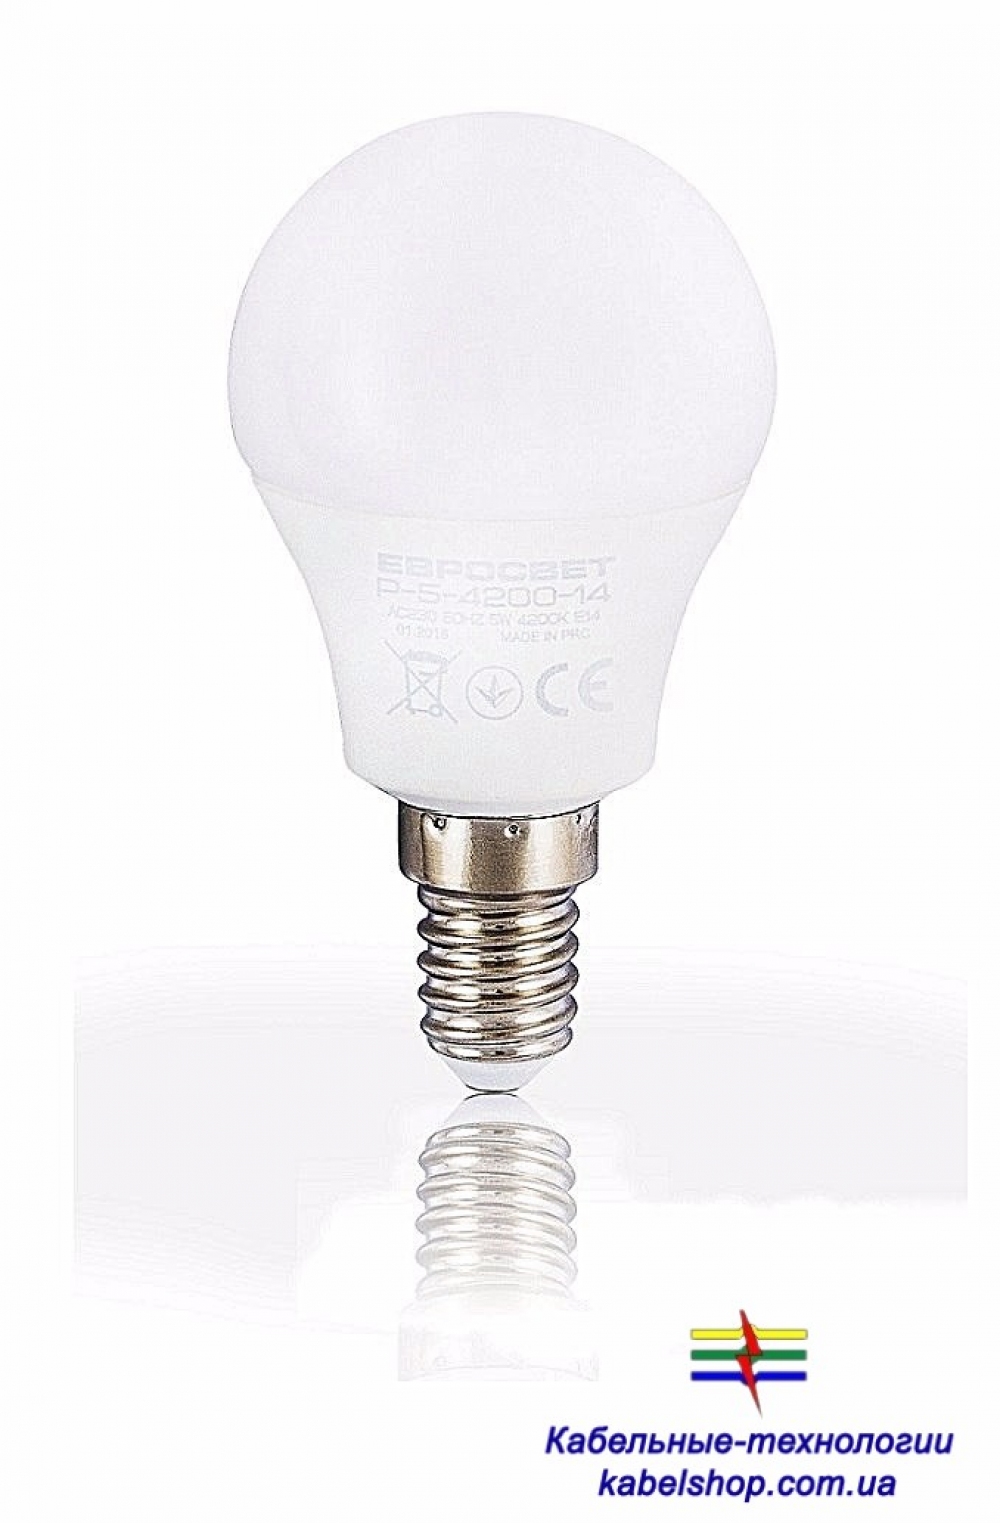 Лампа светодиодная Евросвет шар P-5-4200-14  5вт 230V